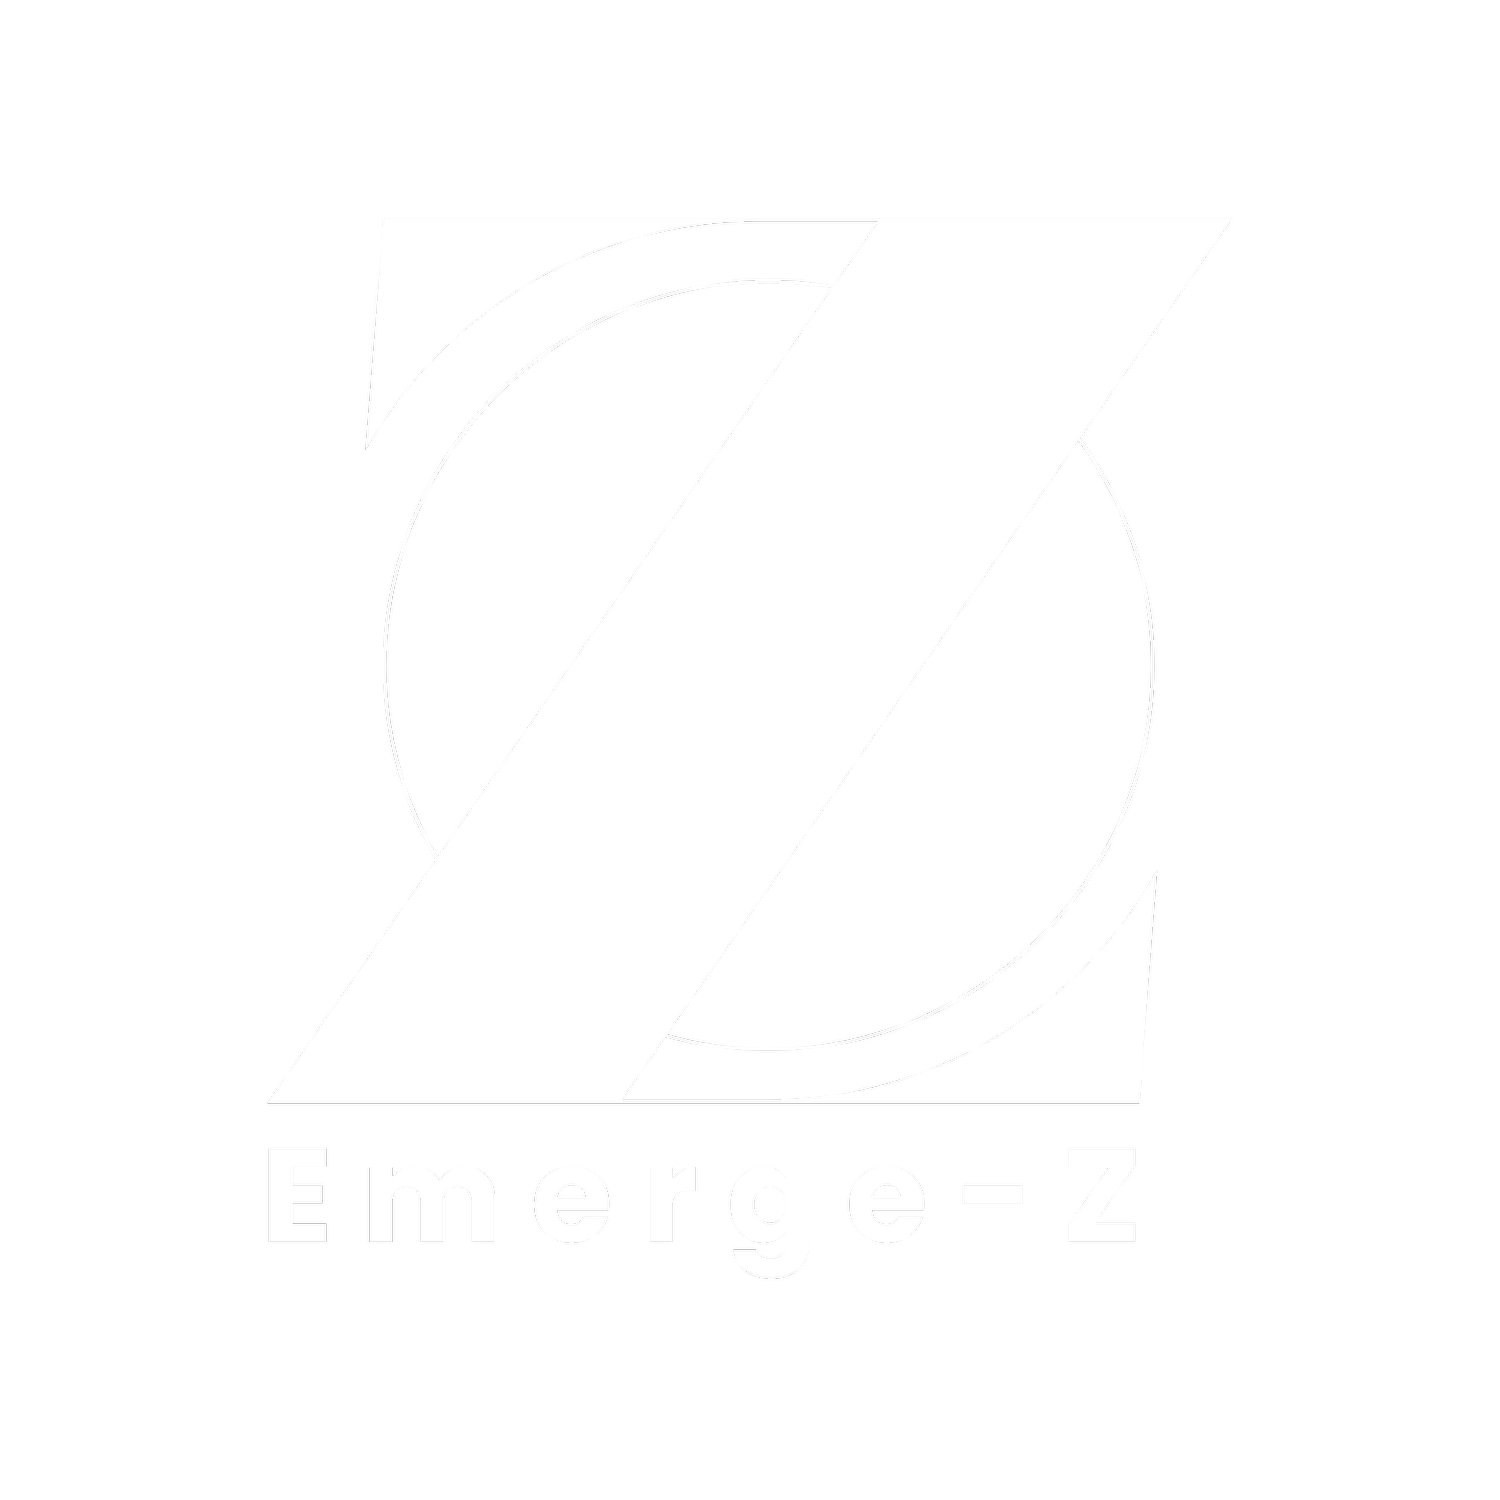 Emerge-Z